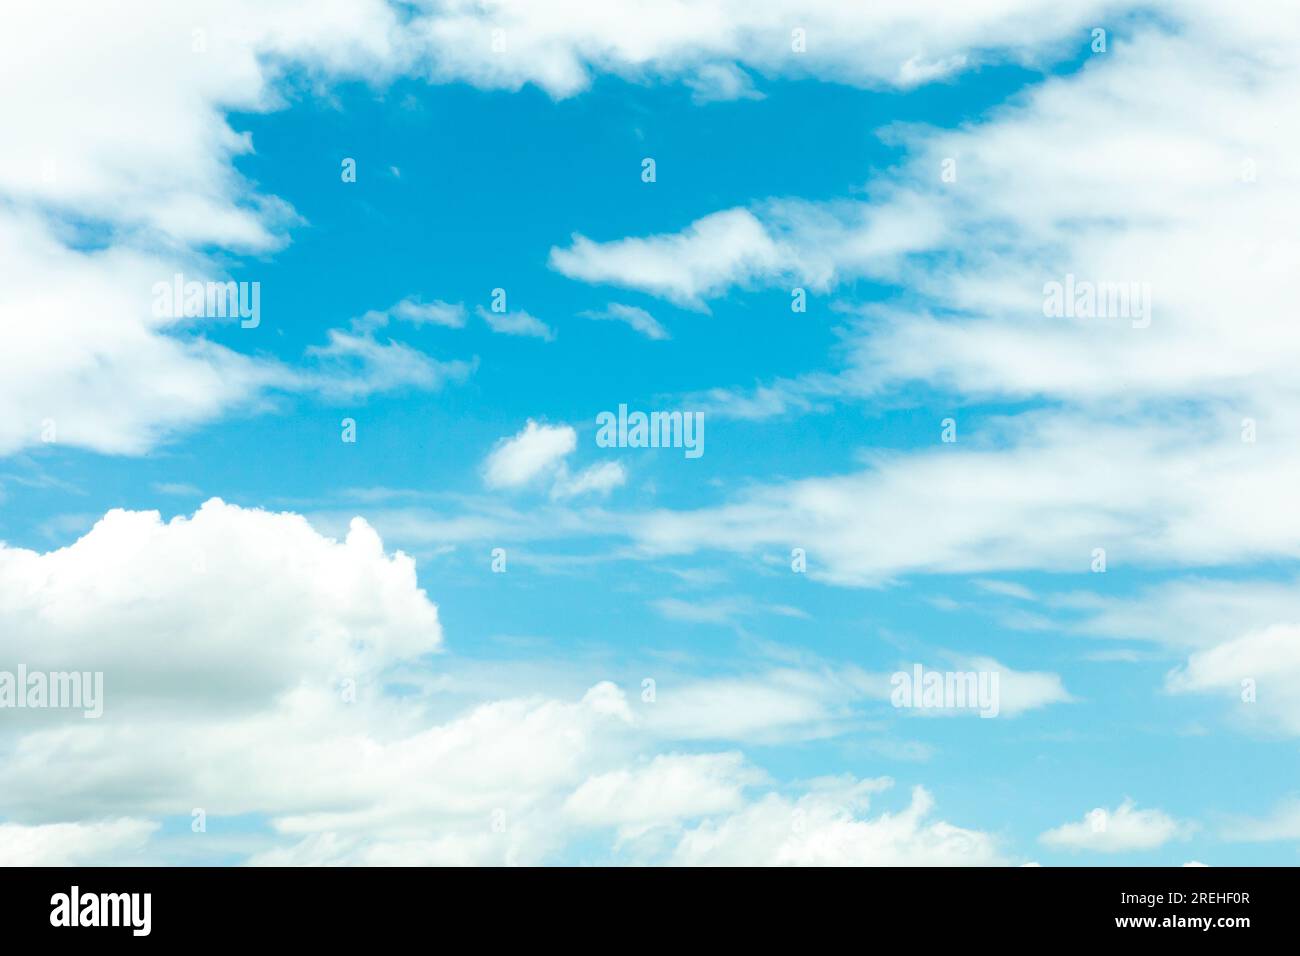 Der Himmel war klar, mit wunderschönen Wolken, die verstreut waren. Kann in allen Formularen verwendet werden. Himmelshintergrund. Stockfoto